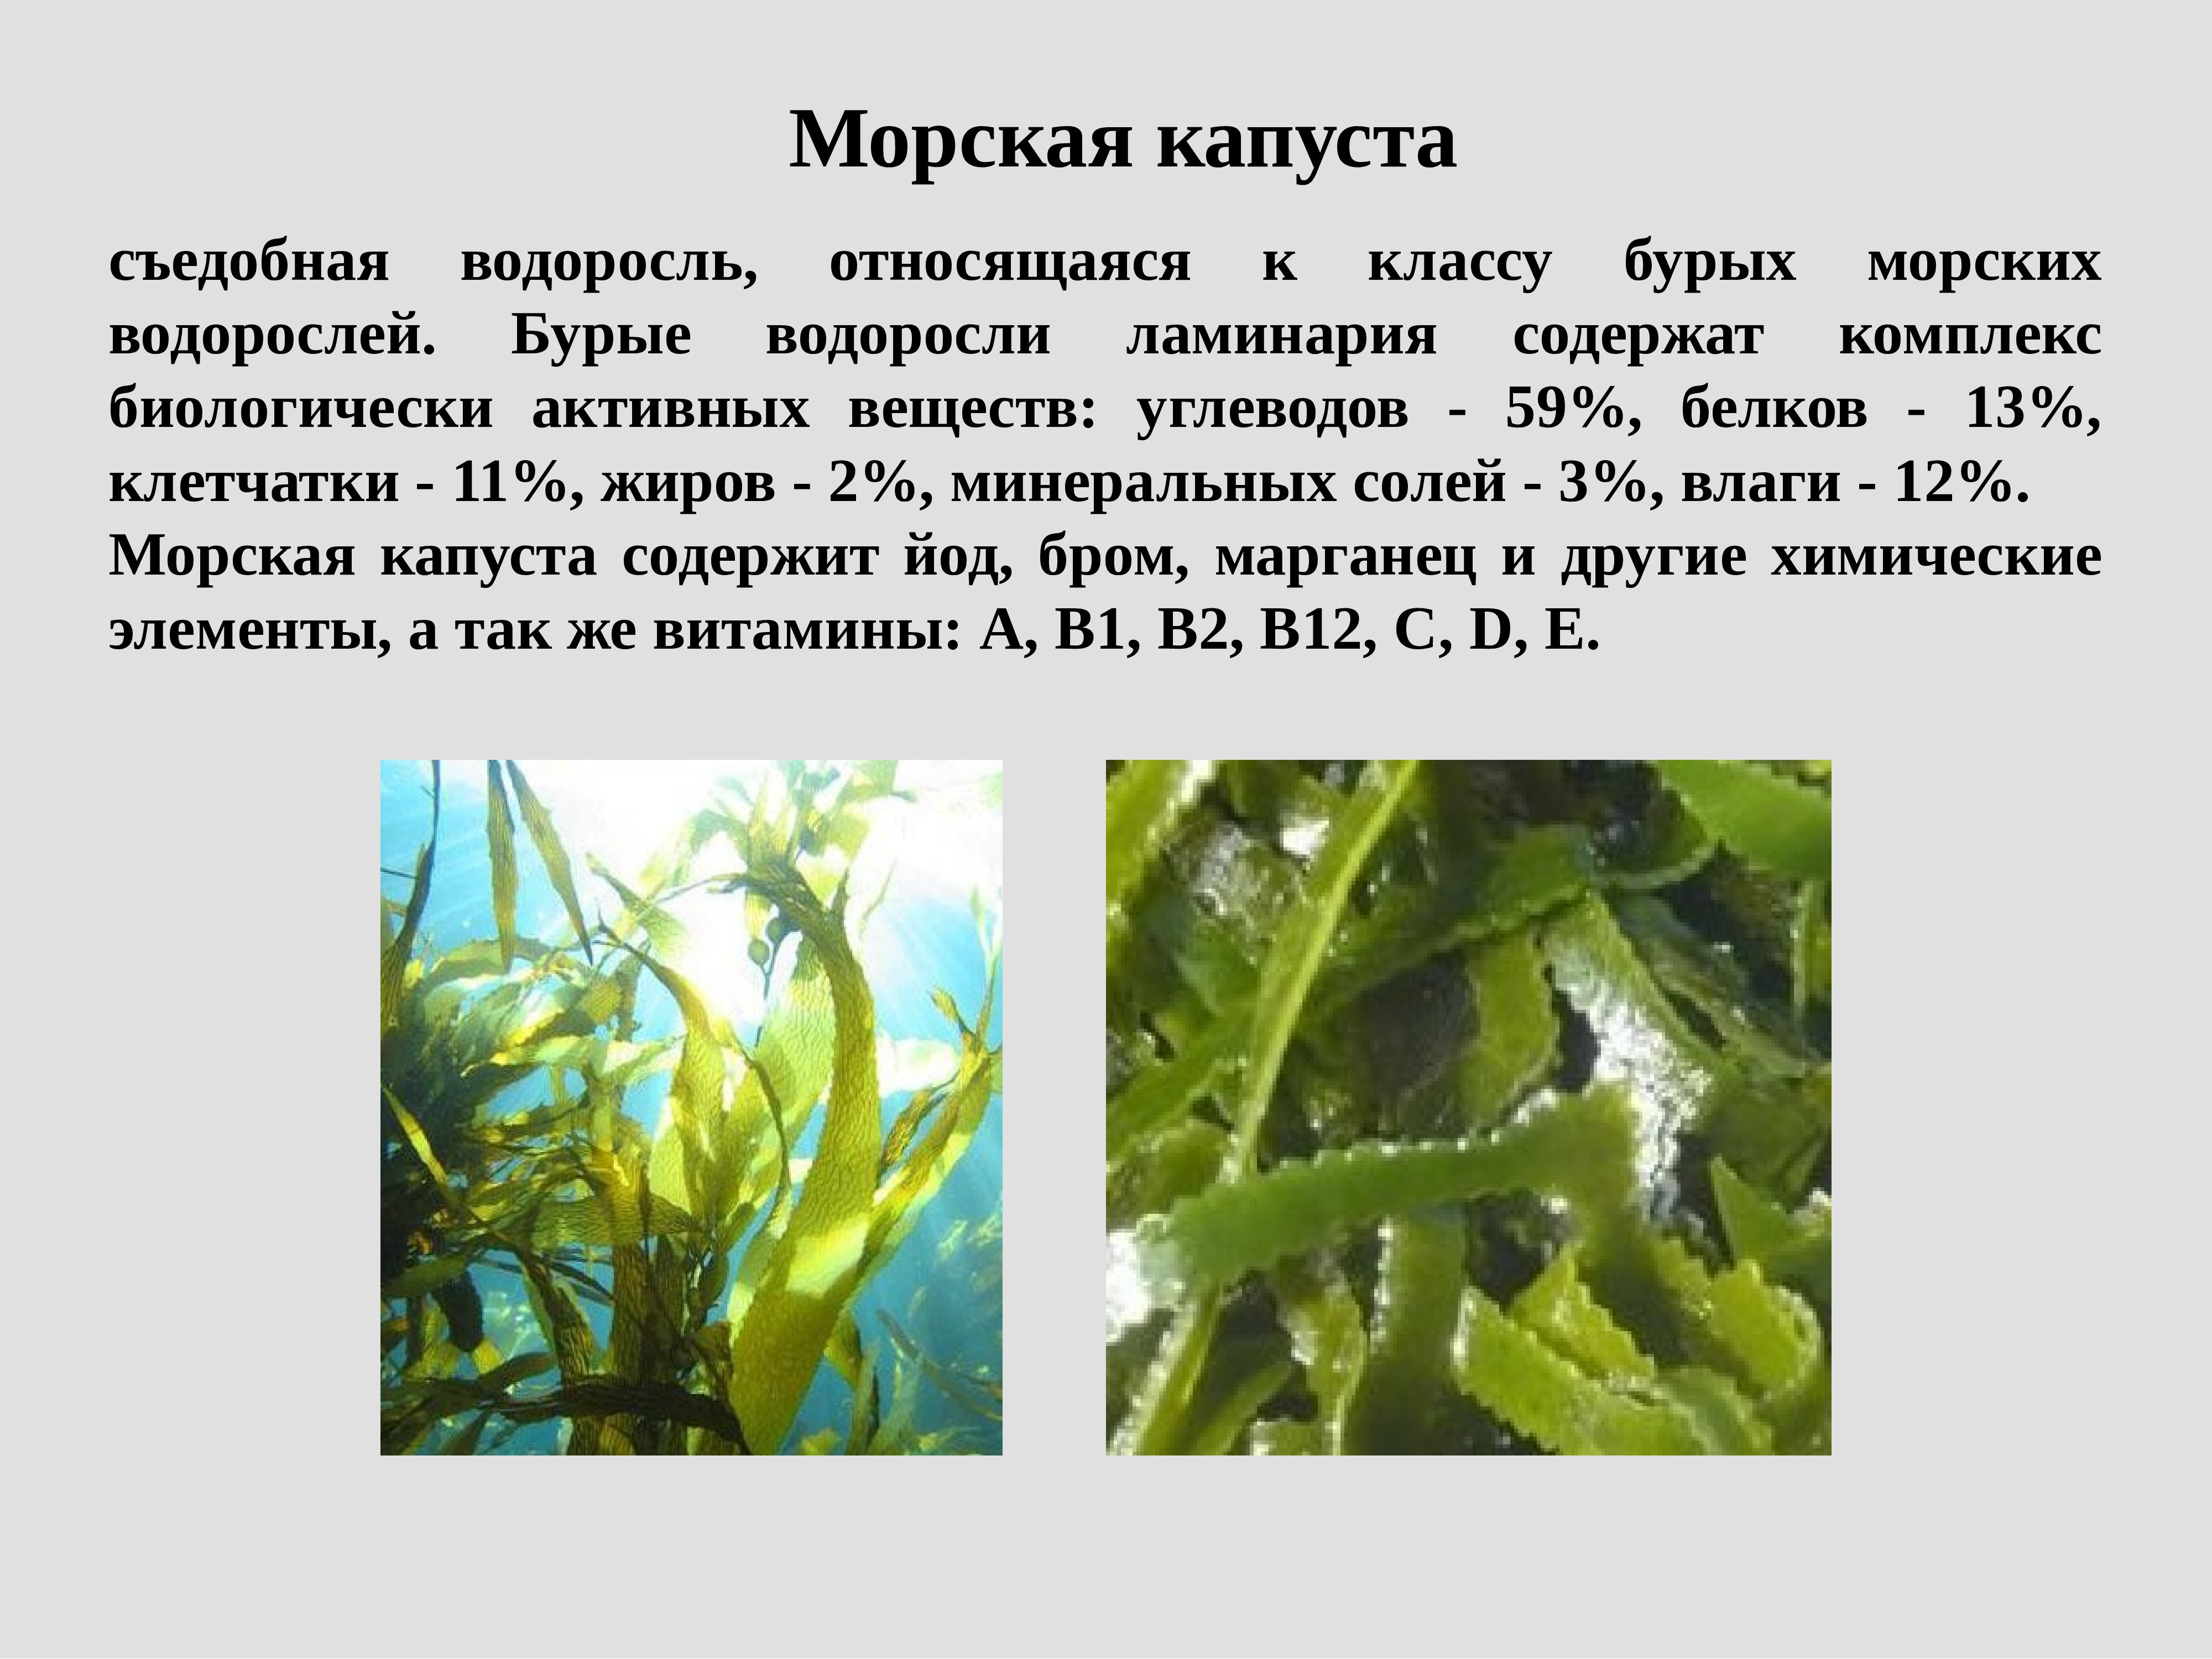 Описание водорослей ламинария. Съедобная бурая водоросль, "морская капуста". Бурые водоросли ламинария. Многоклеточные водоросли ламинария. Сообщение о морской капусте ламинарии.